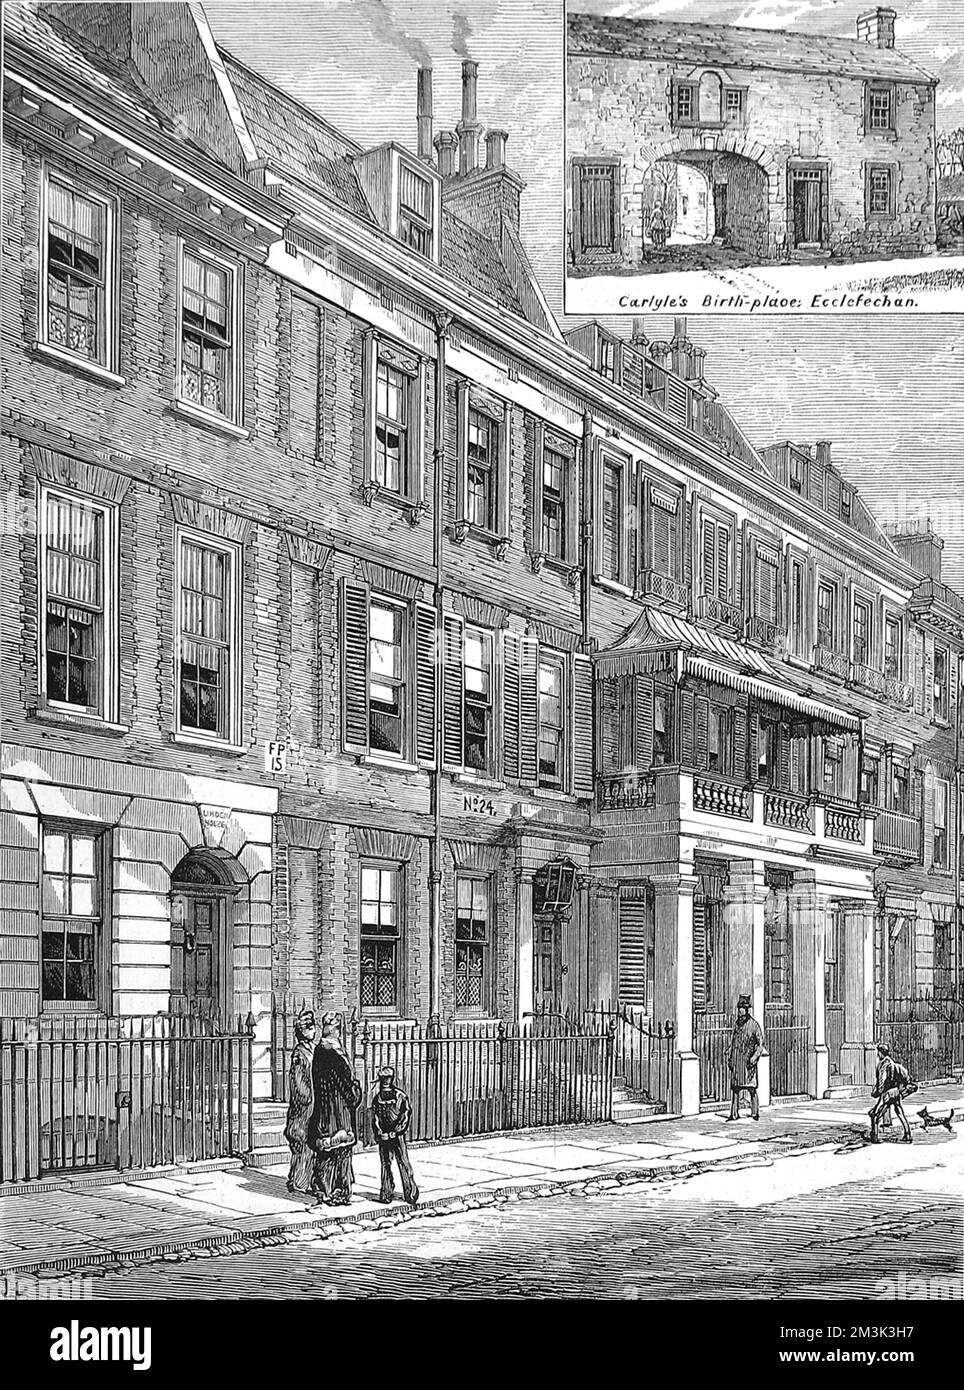 Cheyne Row, Chelsea, Londres, en 1881. Thomas Carlyle (1795-1881), historien et essayiste écossais, y vit. Le lieu de naissance de Carlyle à Ecclefechan, à Dumfries et Galloway, est illustré dans l'encart en haut à droite. 1881 Banque D'Images